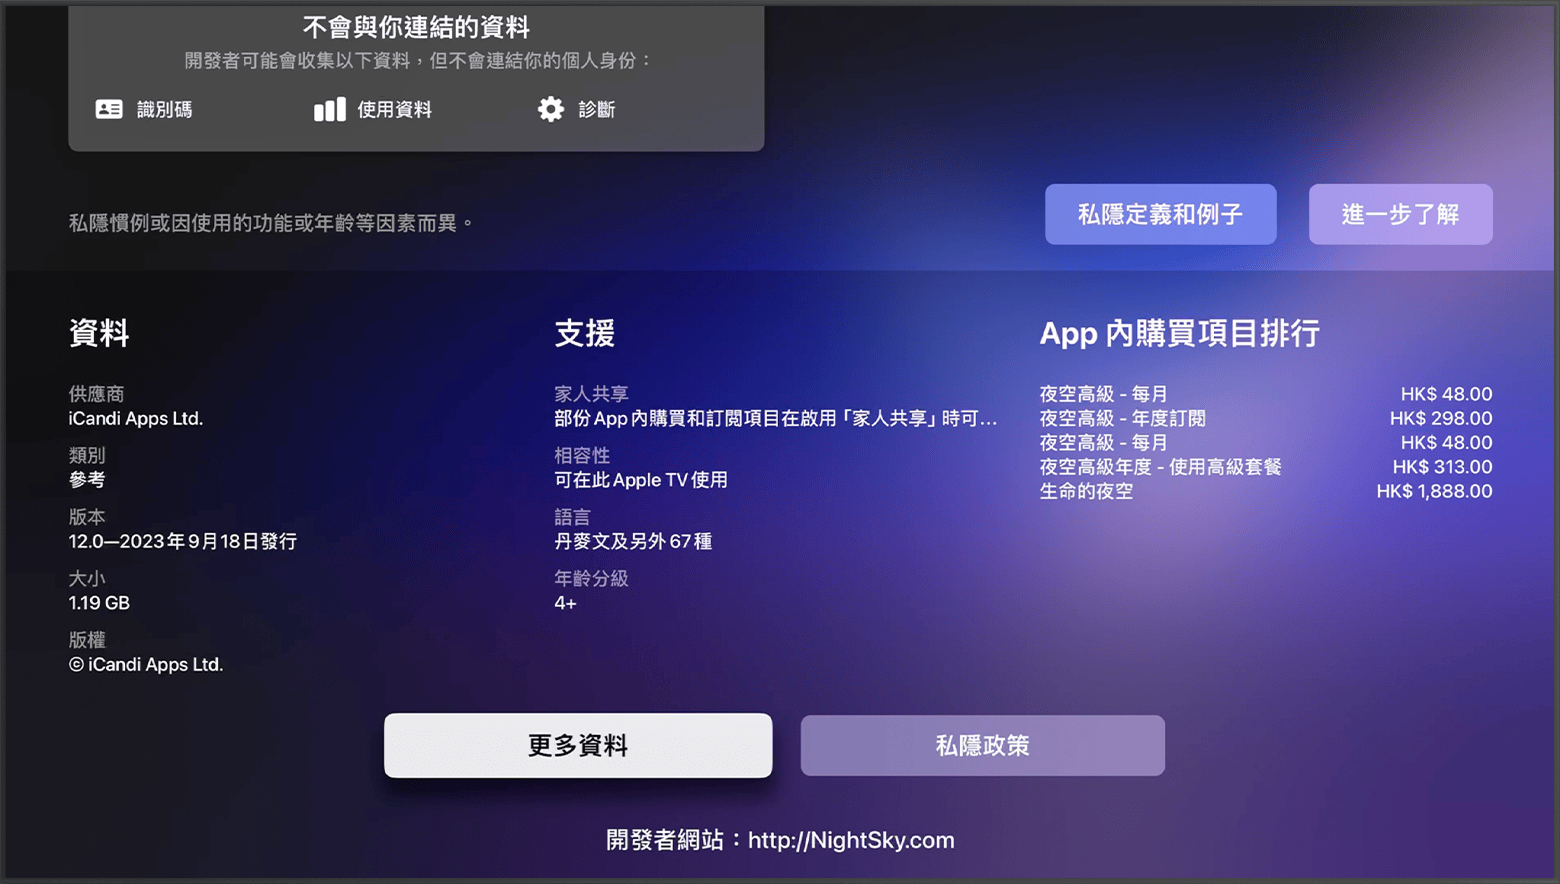 在 Apple TV 的 App Store 中，開發者的網站位於 app 頁面的底部。